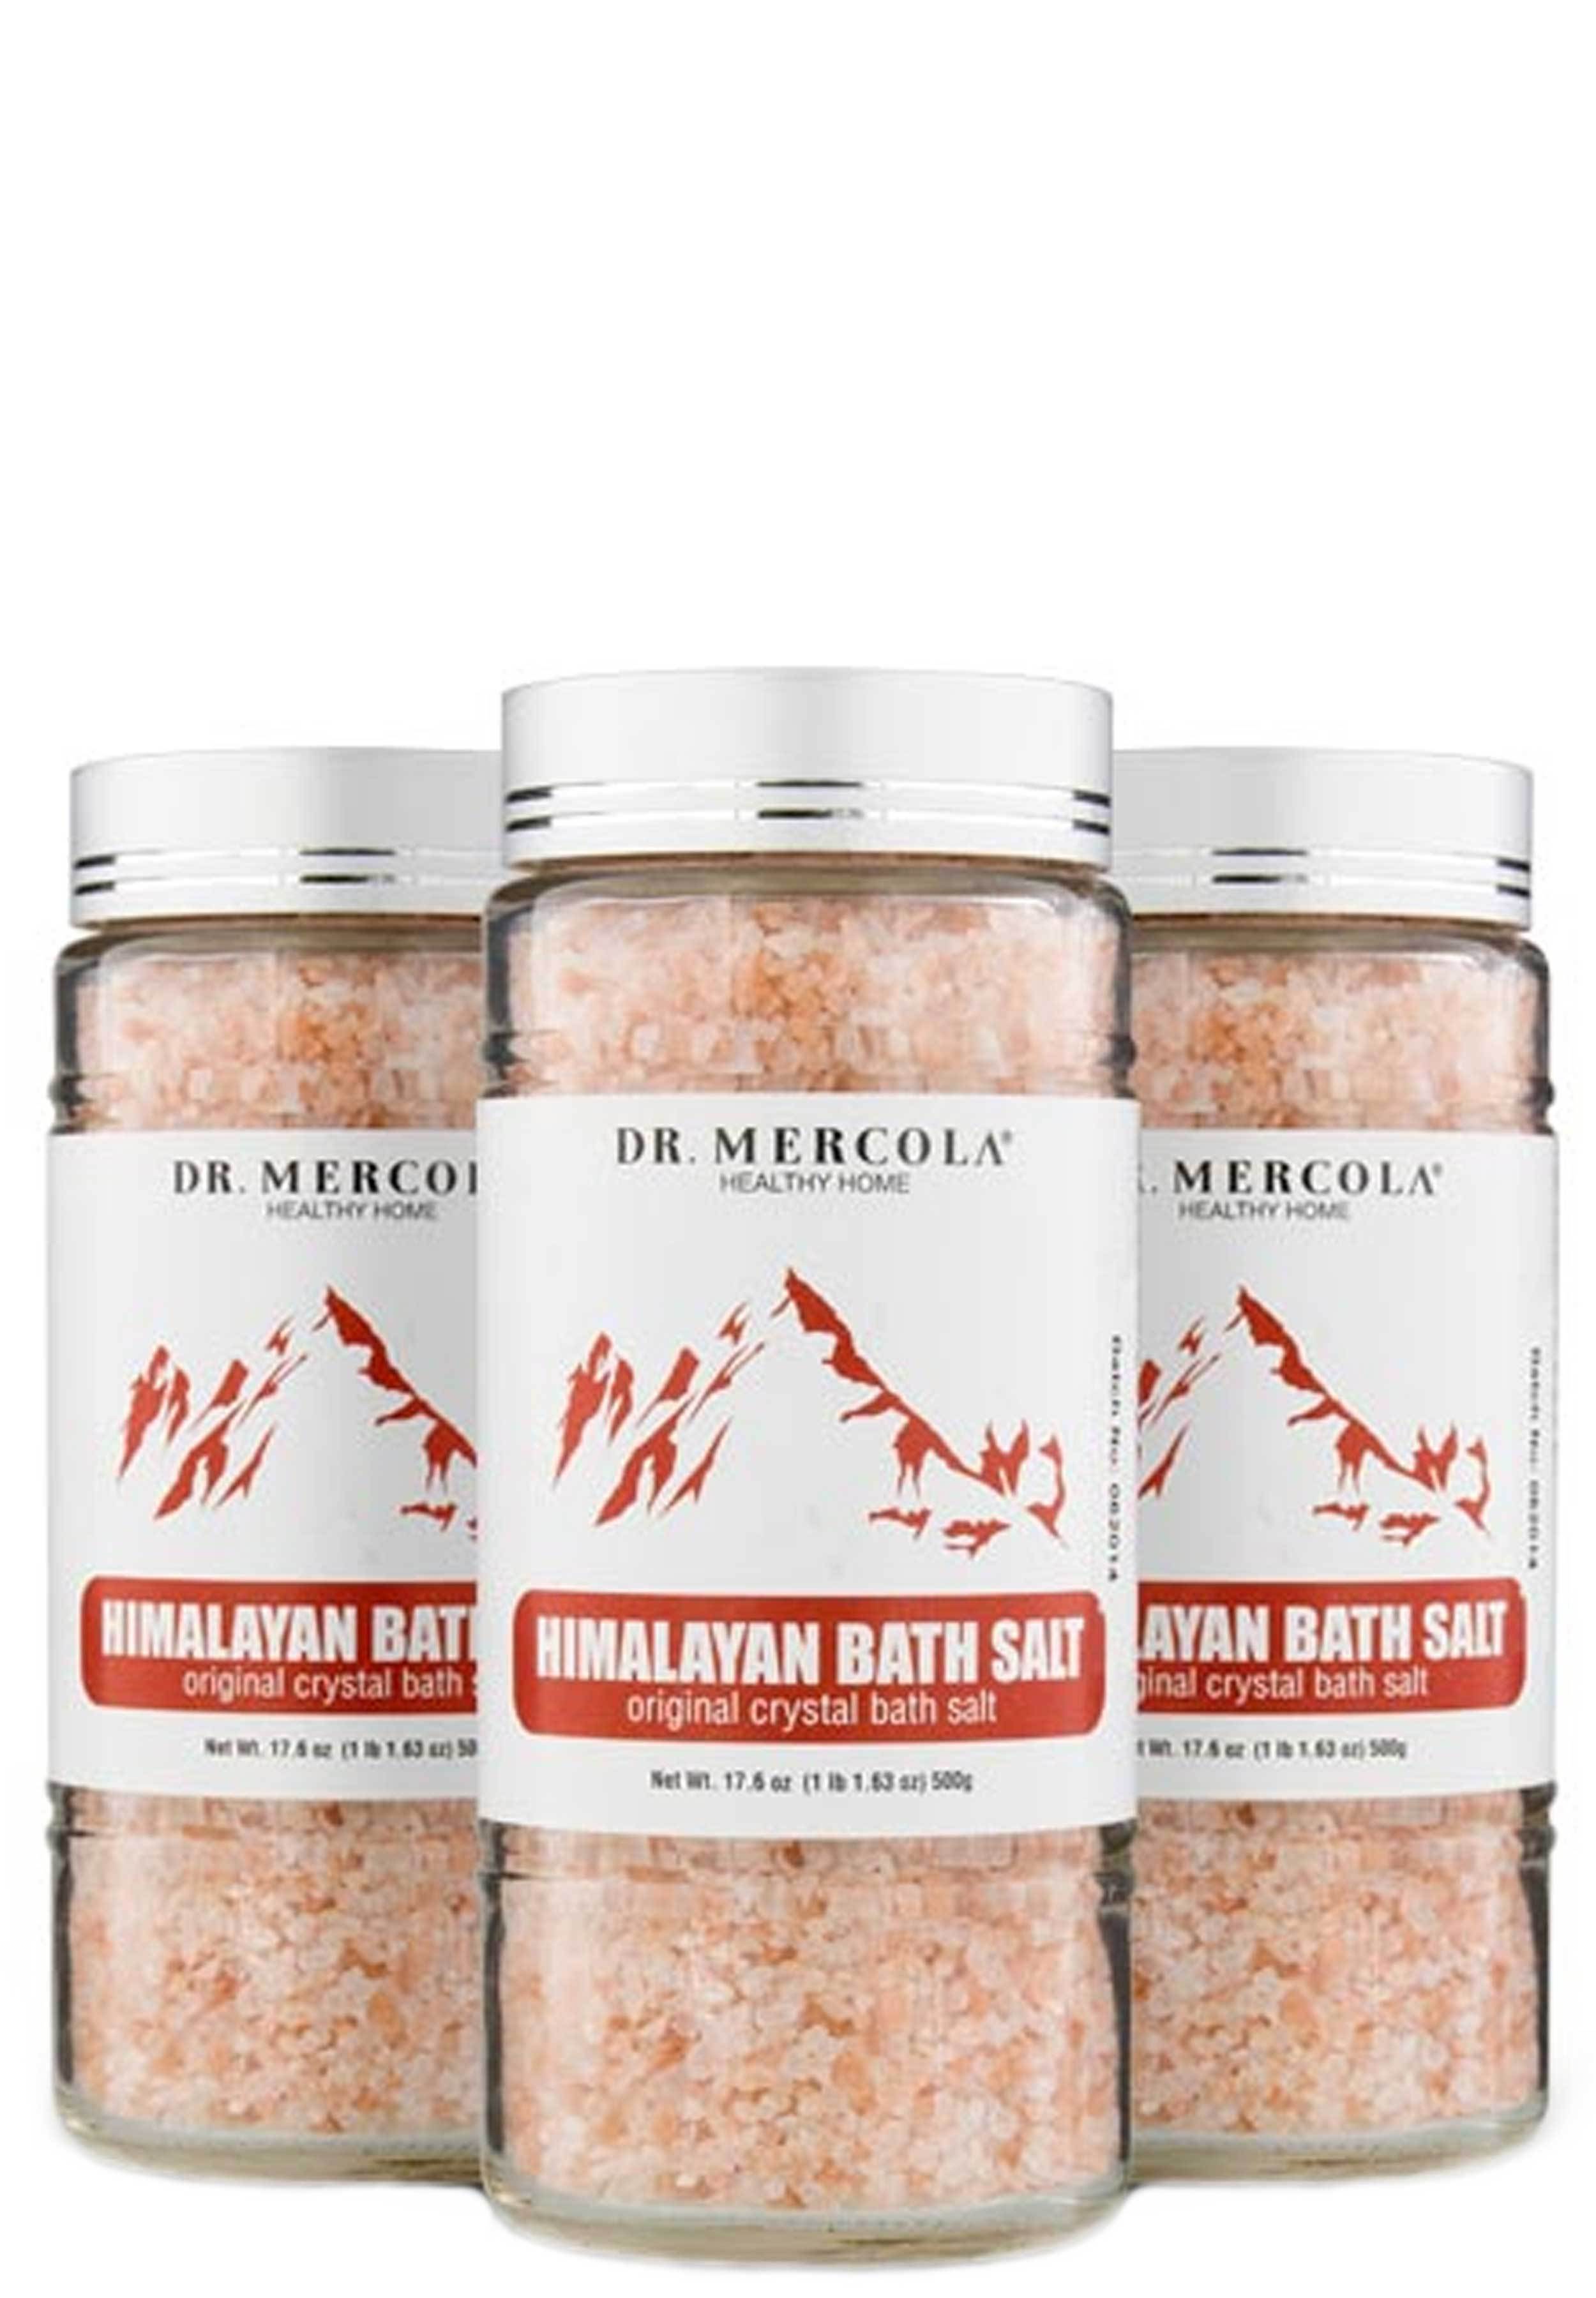 Dr. Mercola Himalayan Bath Salt